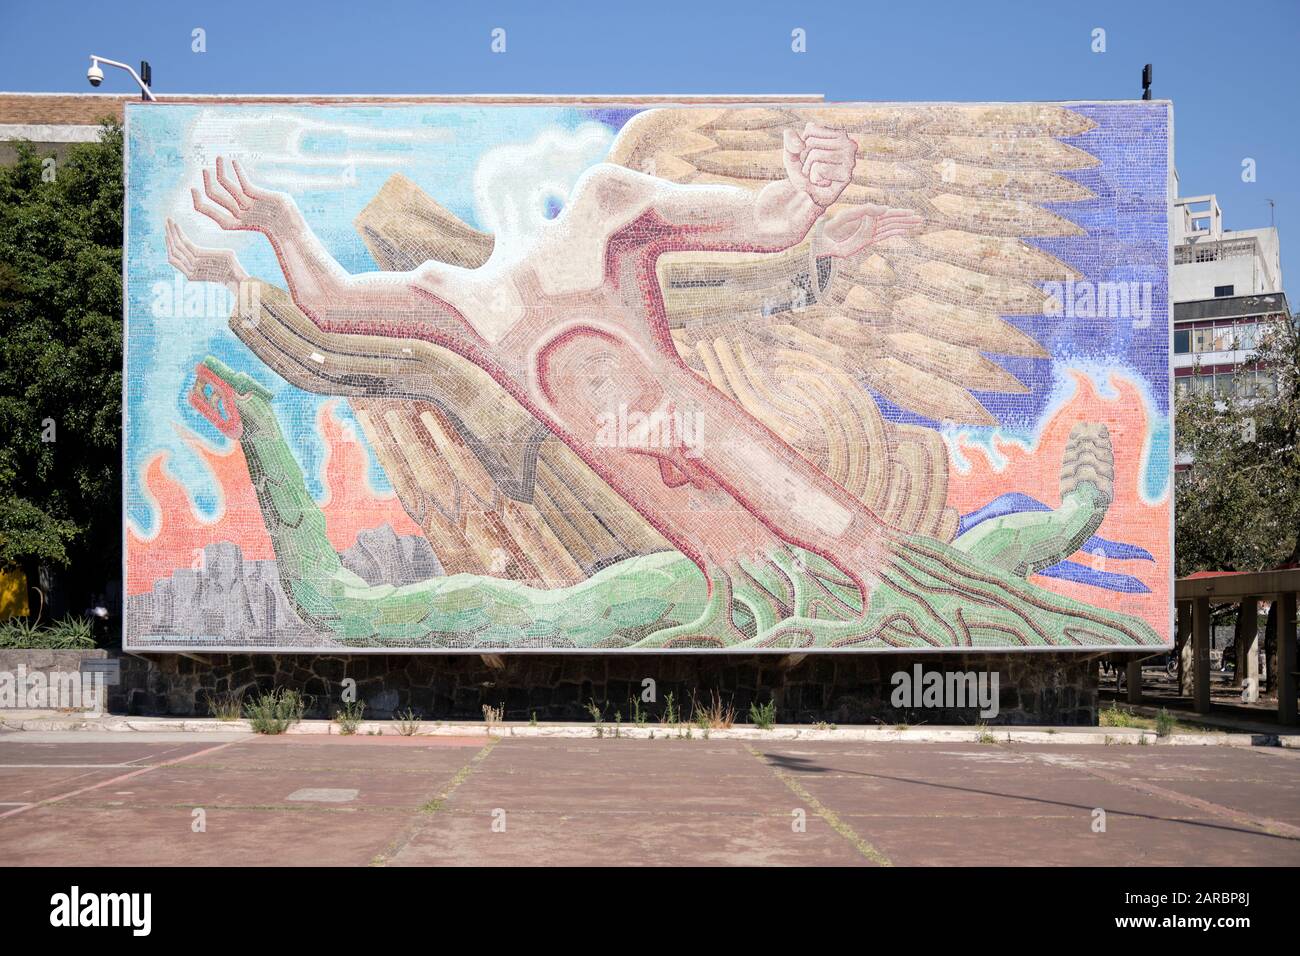 Mexico University Mural: 'La superación del hombre por medio de la cultura' by Francisco Eppens Helguera Stock Photo